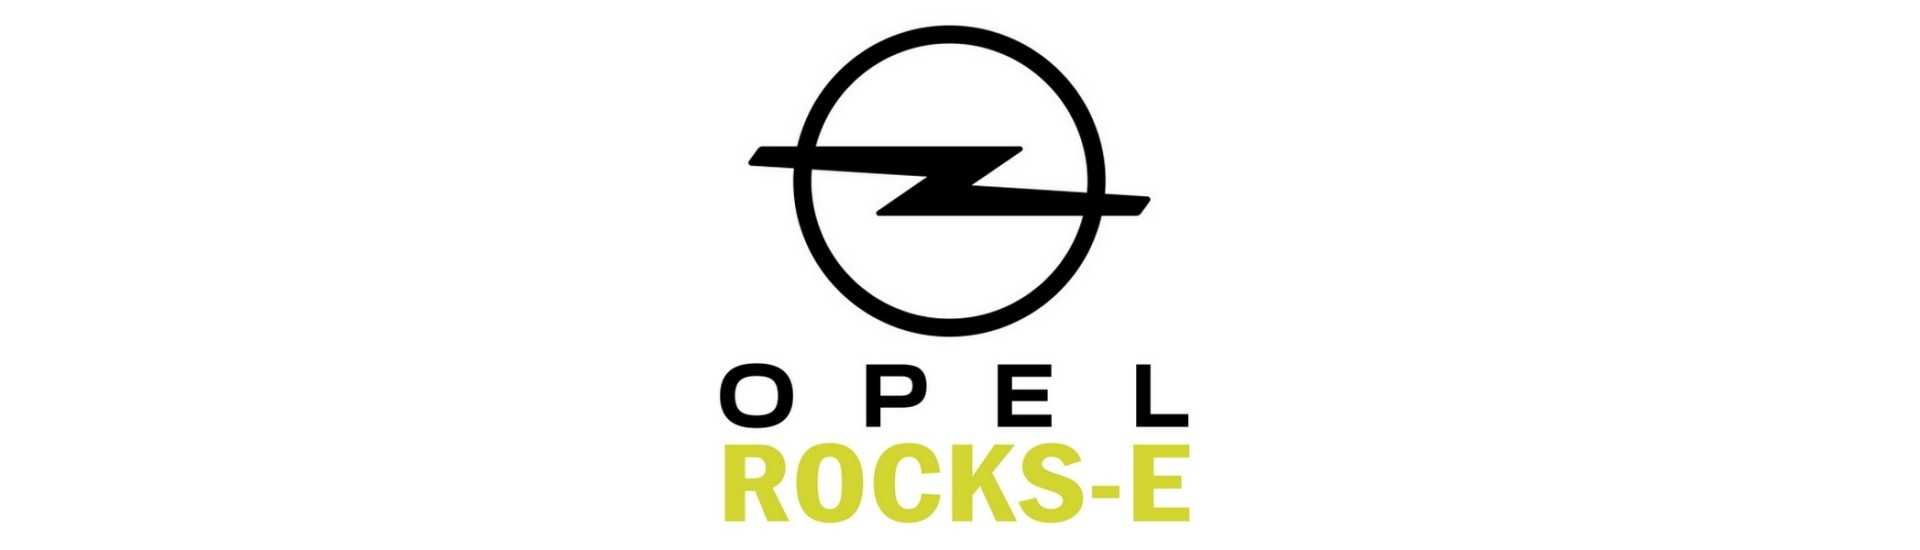 Carrosserie au meilleur prix pour voiture sans permis Opel Rocks-E